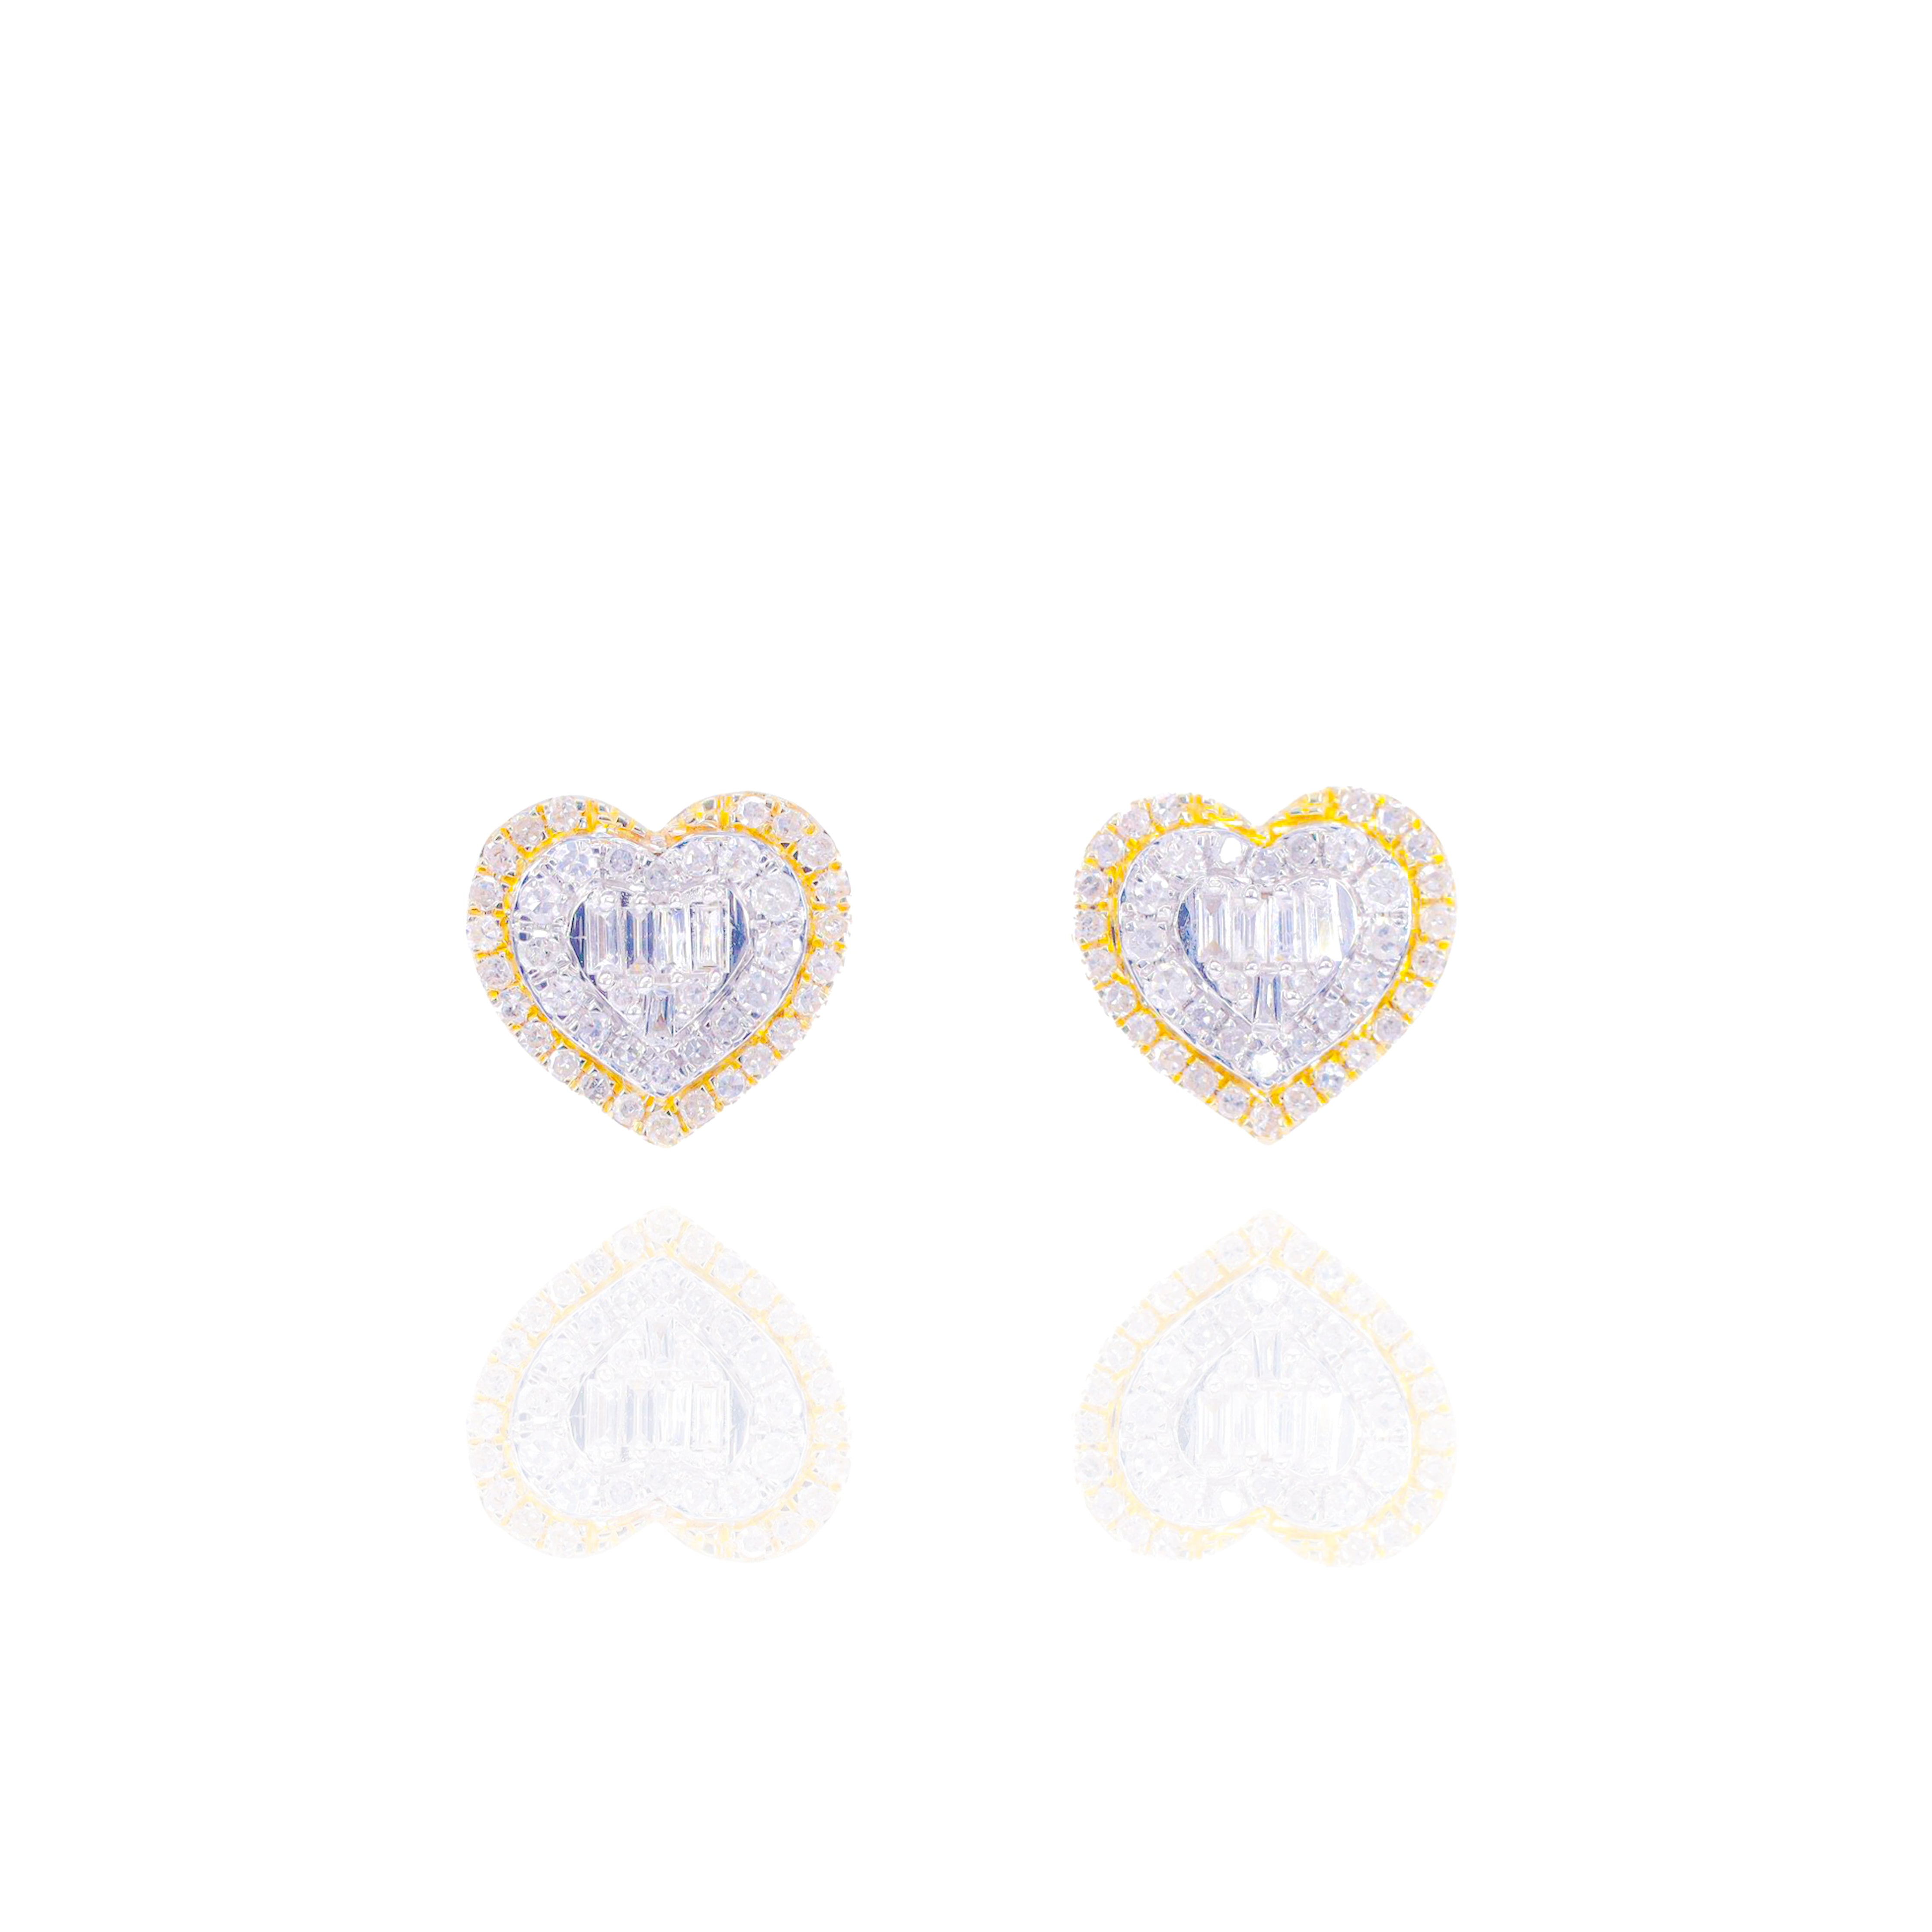 Two-Tone Heart w/ Baguette Center Diamond Earrings